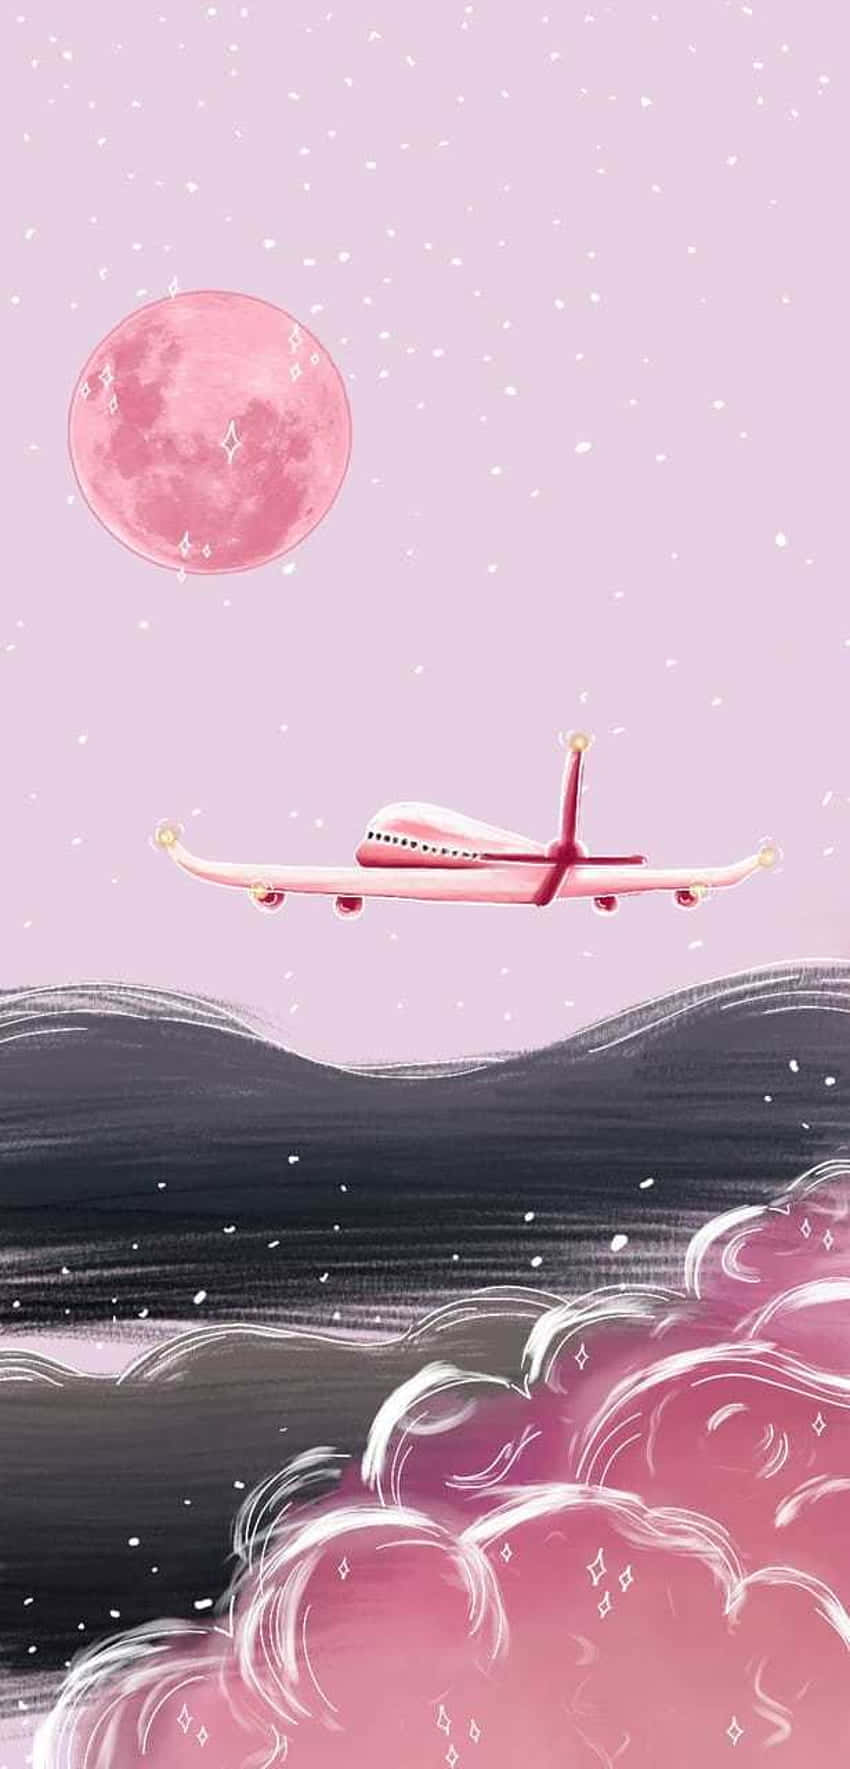 Flyghögt Ovanför Molnen I Detta Majestätiska Rosa Flygplan. Wallpaper